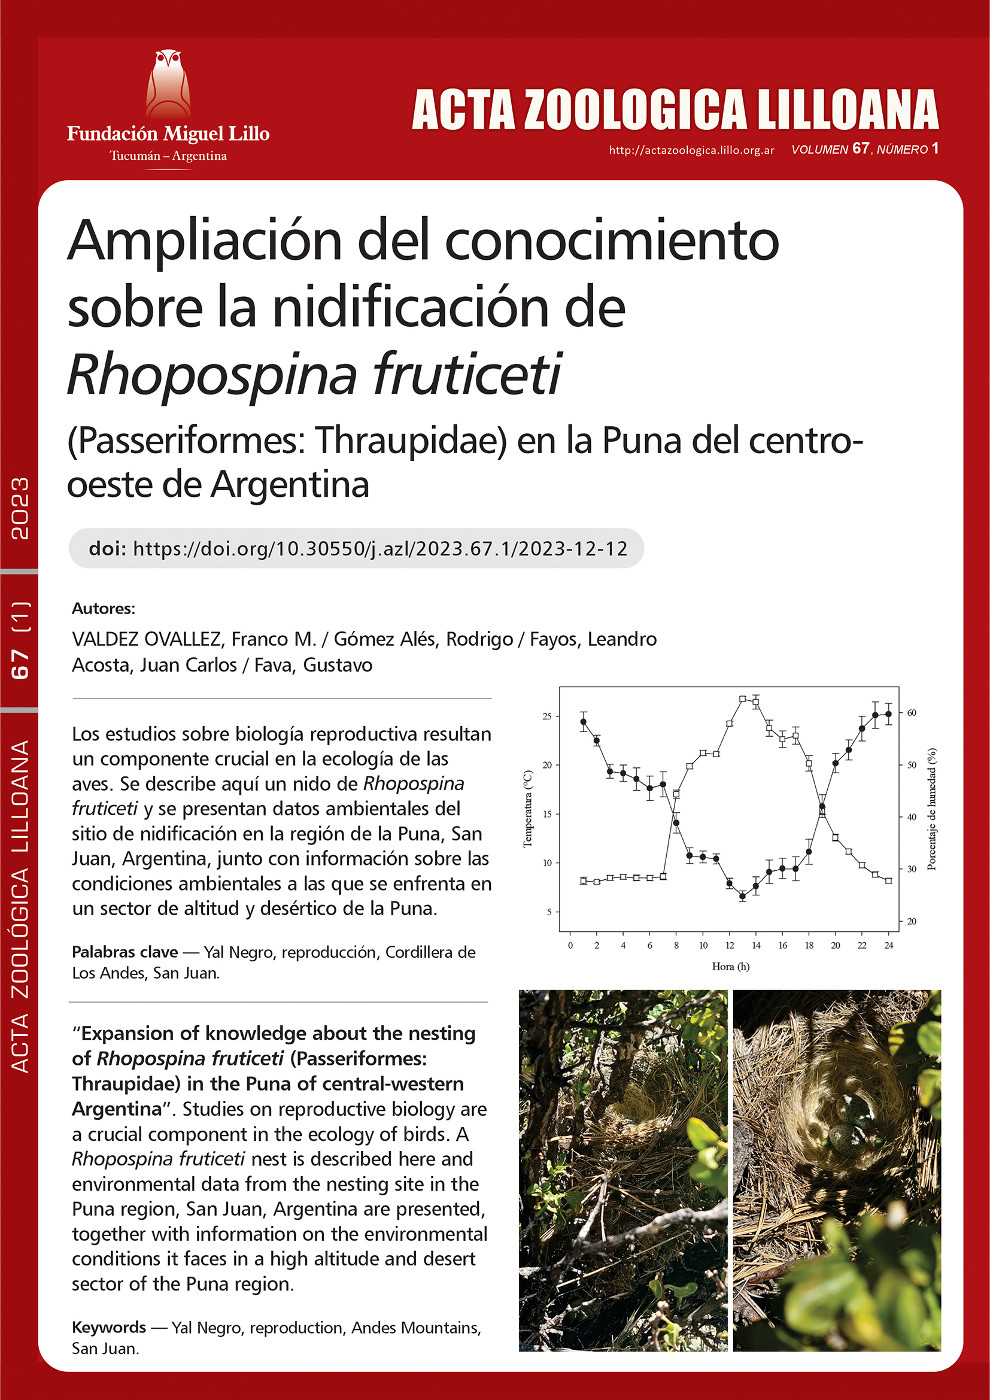 Ampliación del conocimiento sobre la nidificación de Rhopospina fruticeti (Passeriform